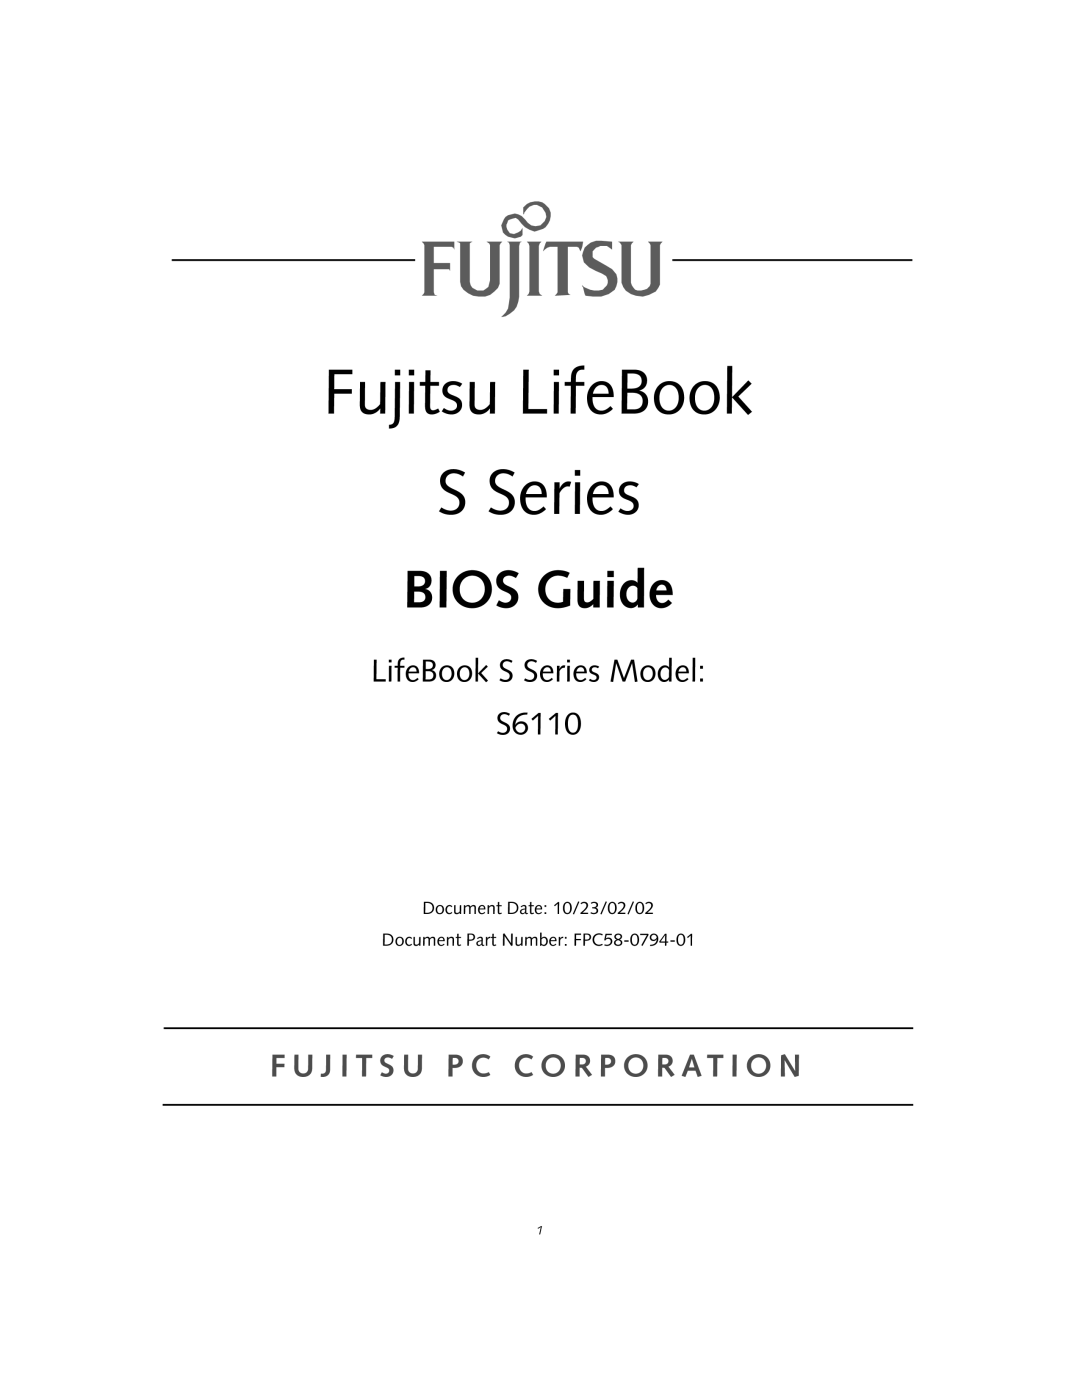 Fujitsu manual Fujitsu LifeBook S Series, BIOS Guide, LifeBook S Series Model S6110 